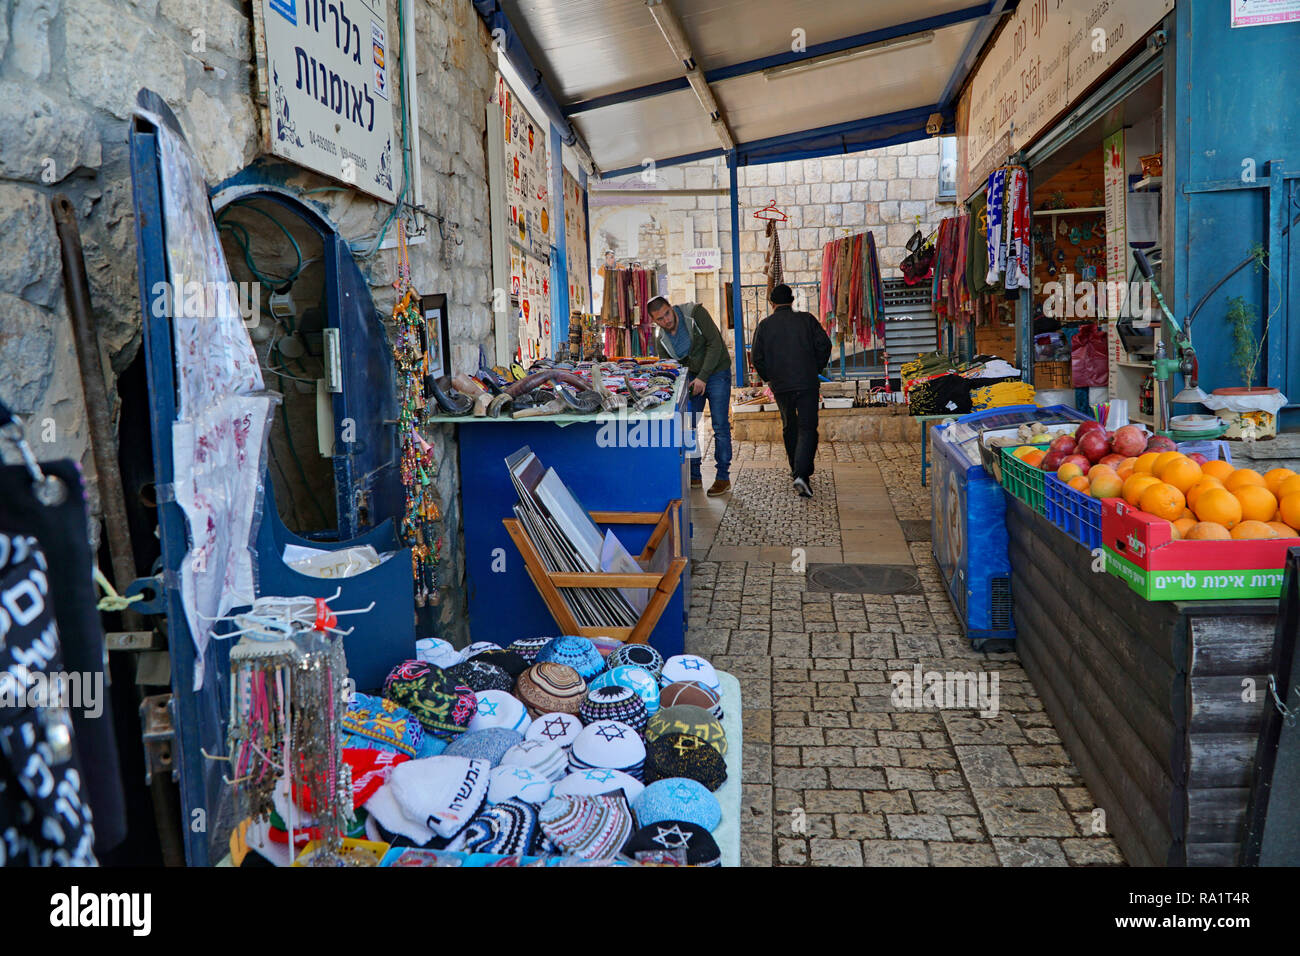 La SAFED, Israele - Gennaio 2017: questa antica città con stretti vicoli ospita artisti i monolocali e una strada del mercato, come si è visto qui. Foto Stock